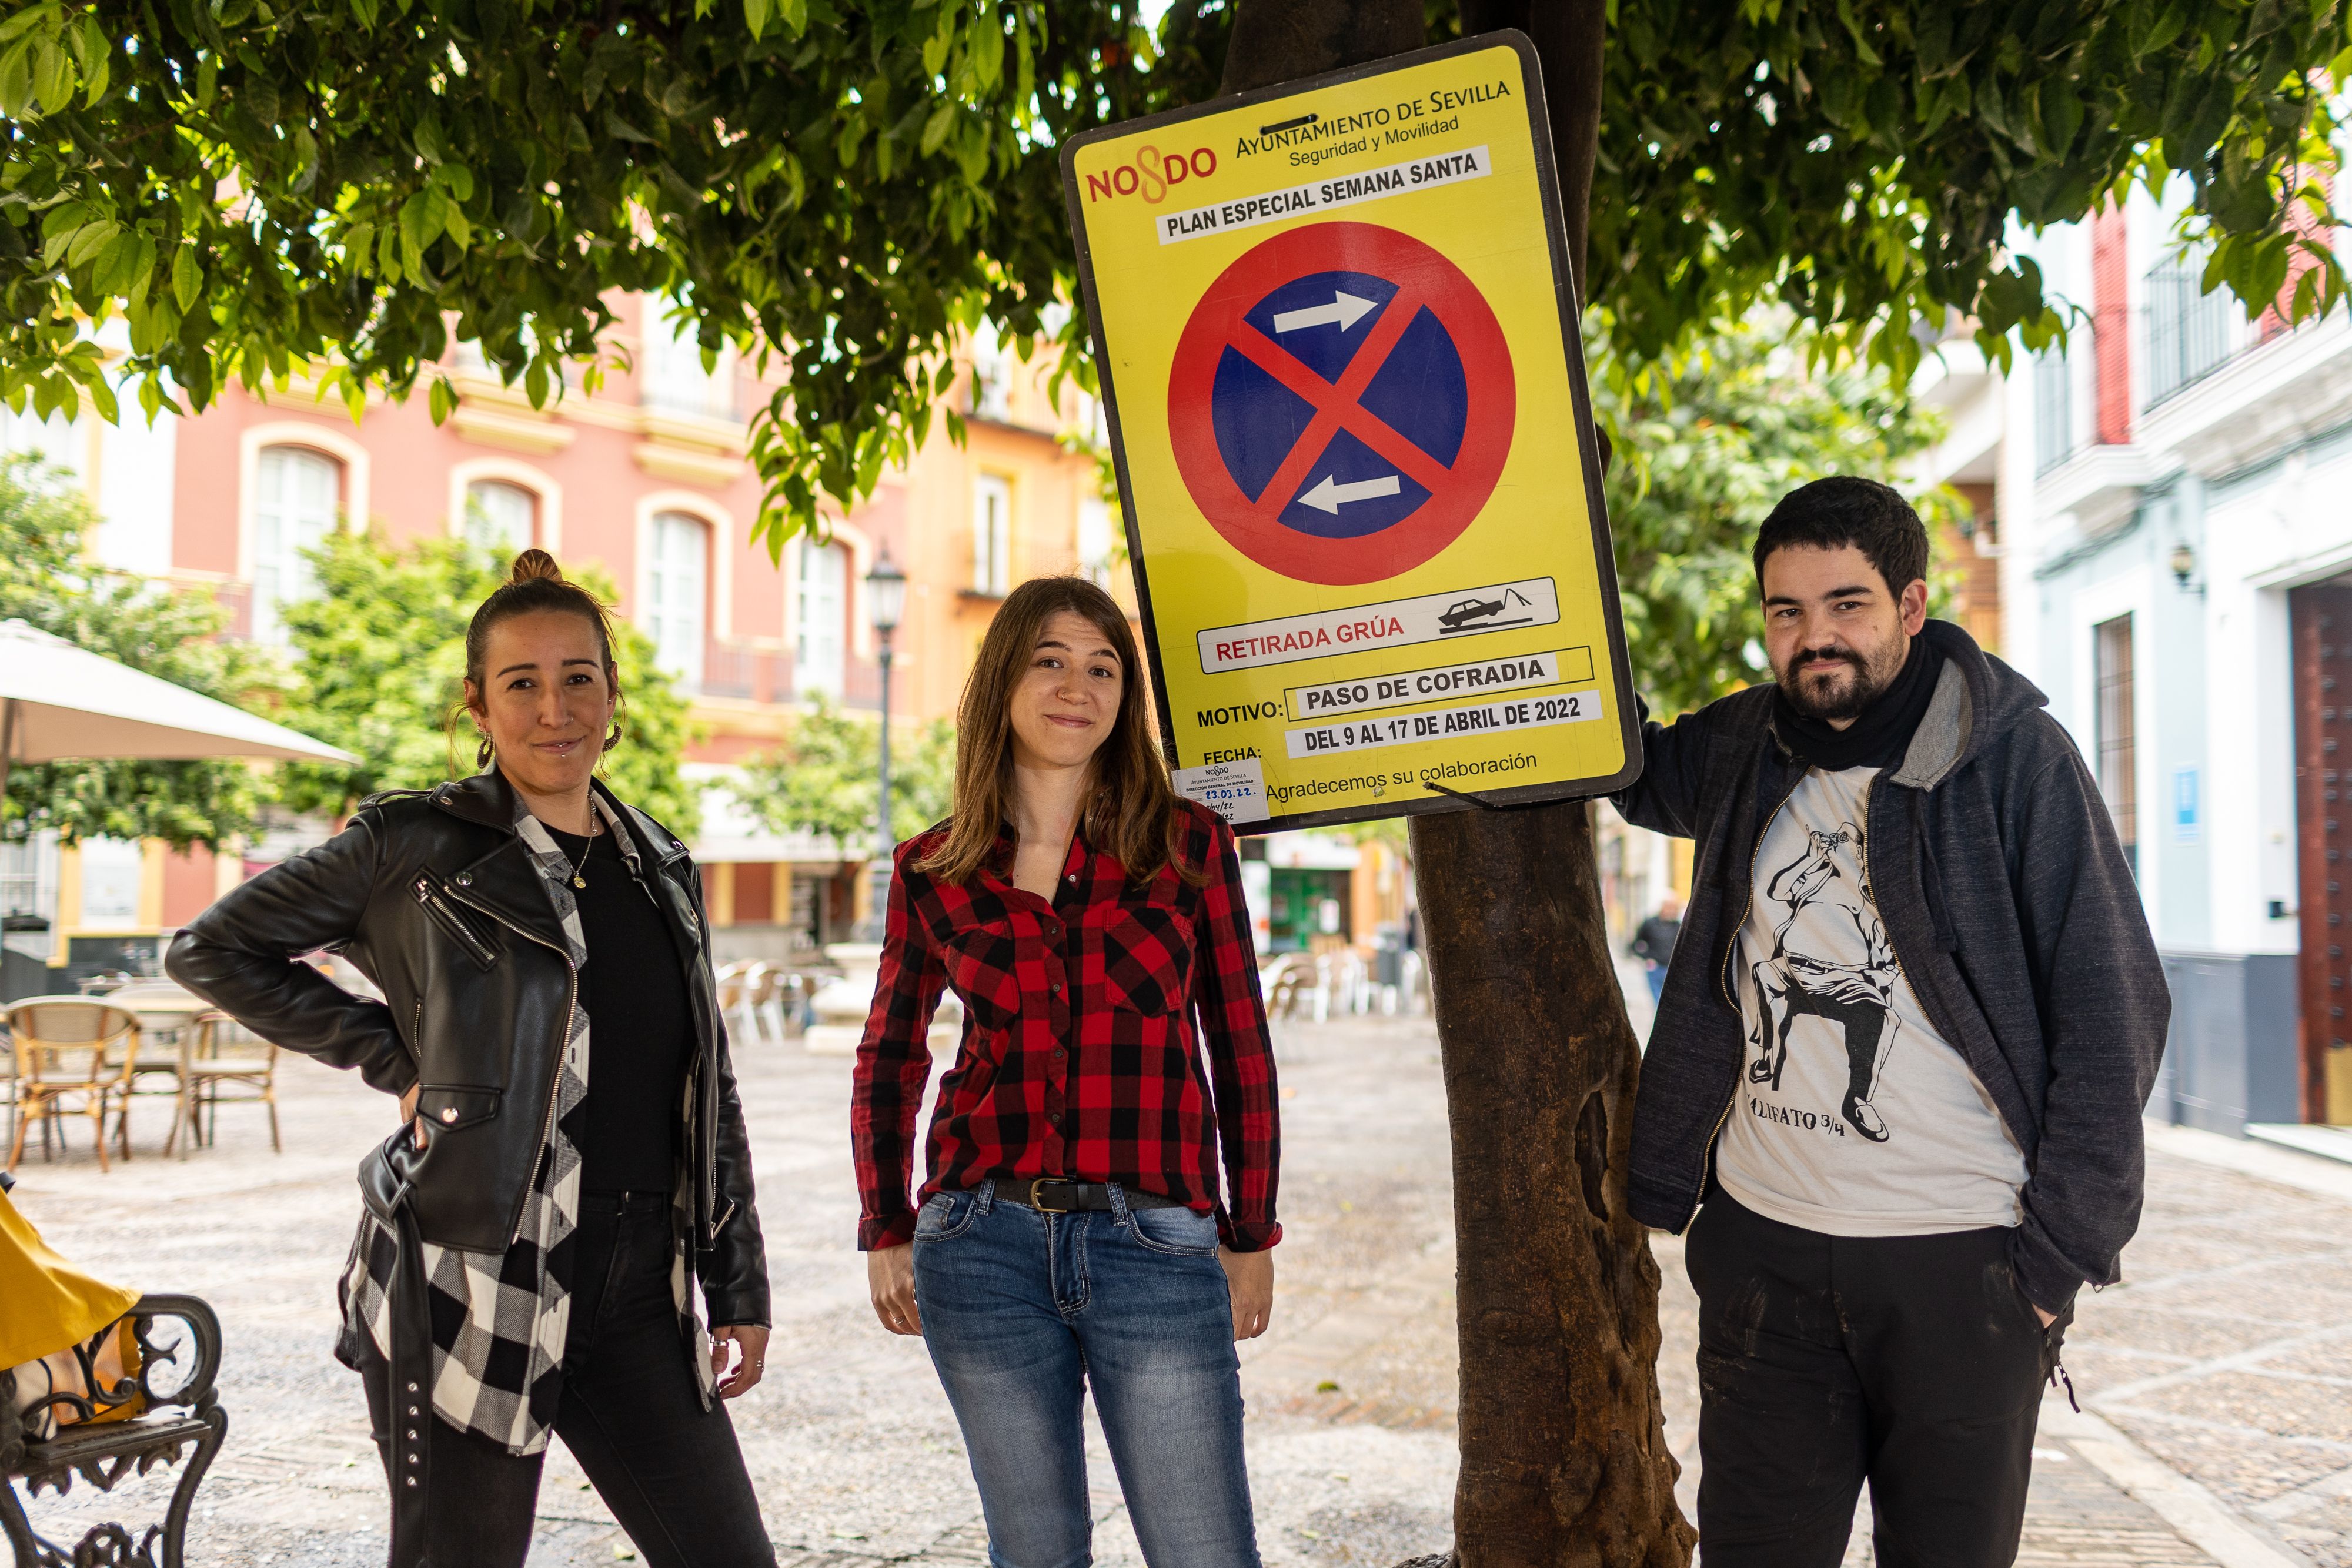 Proyecto PALIO (Marian, Grecia y Bernar) en la Plaza de San Andrés de Sevilla, junto a una señal que indica "un plan especial para la Semana Santa"